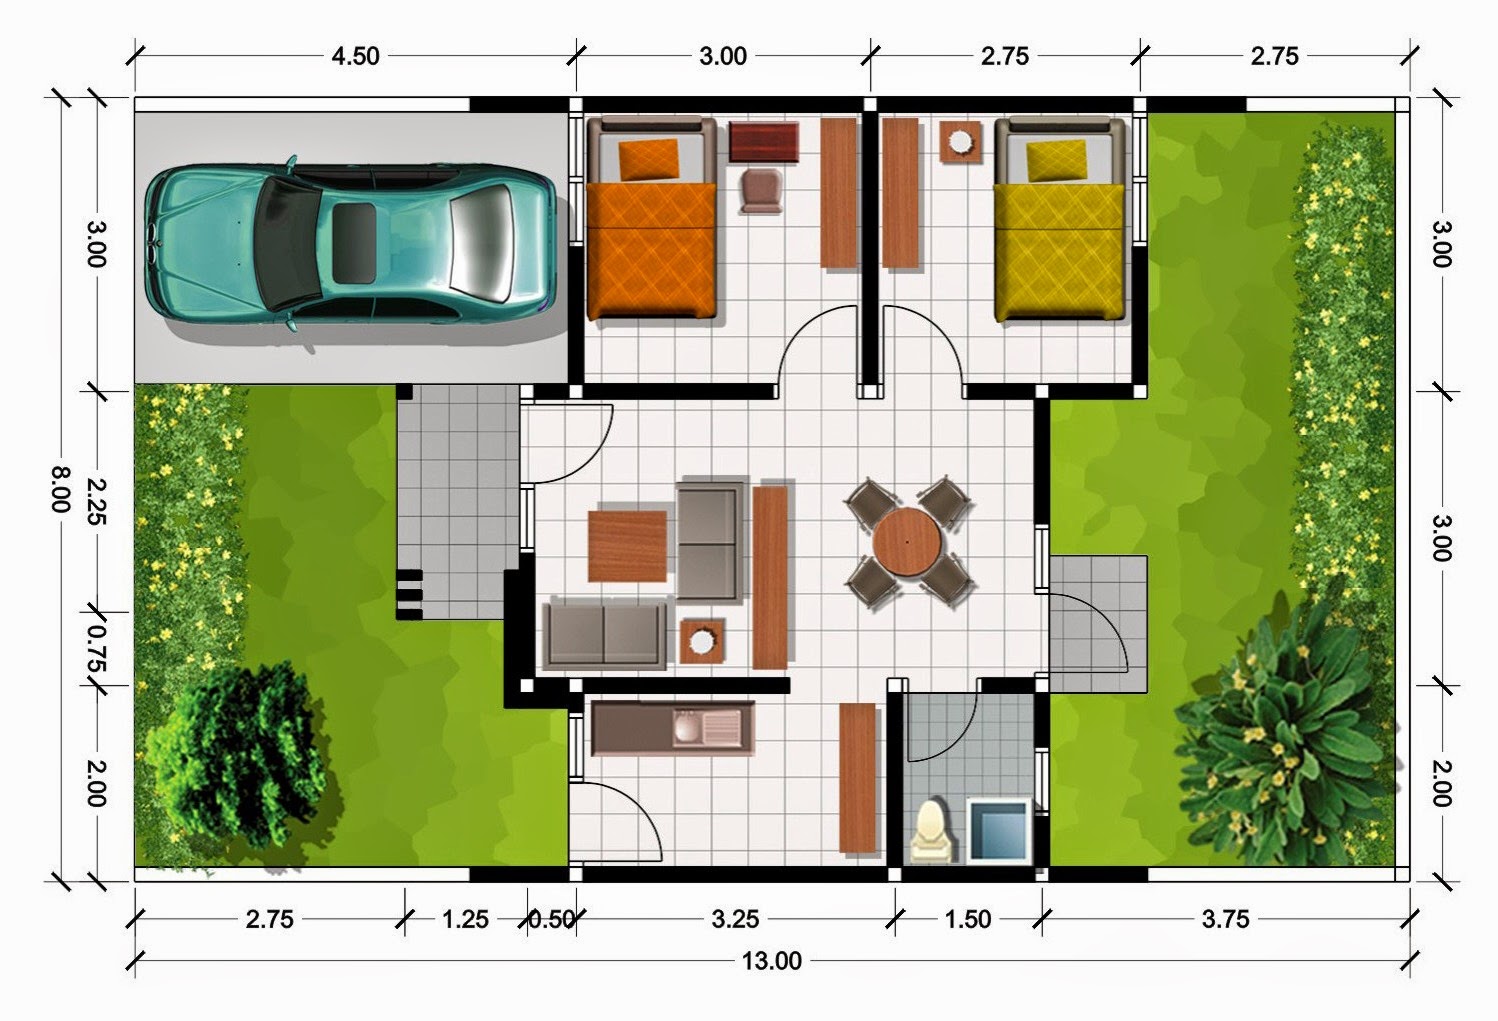 Contoh Sketsa Desain Rumah Minimalis